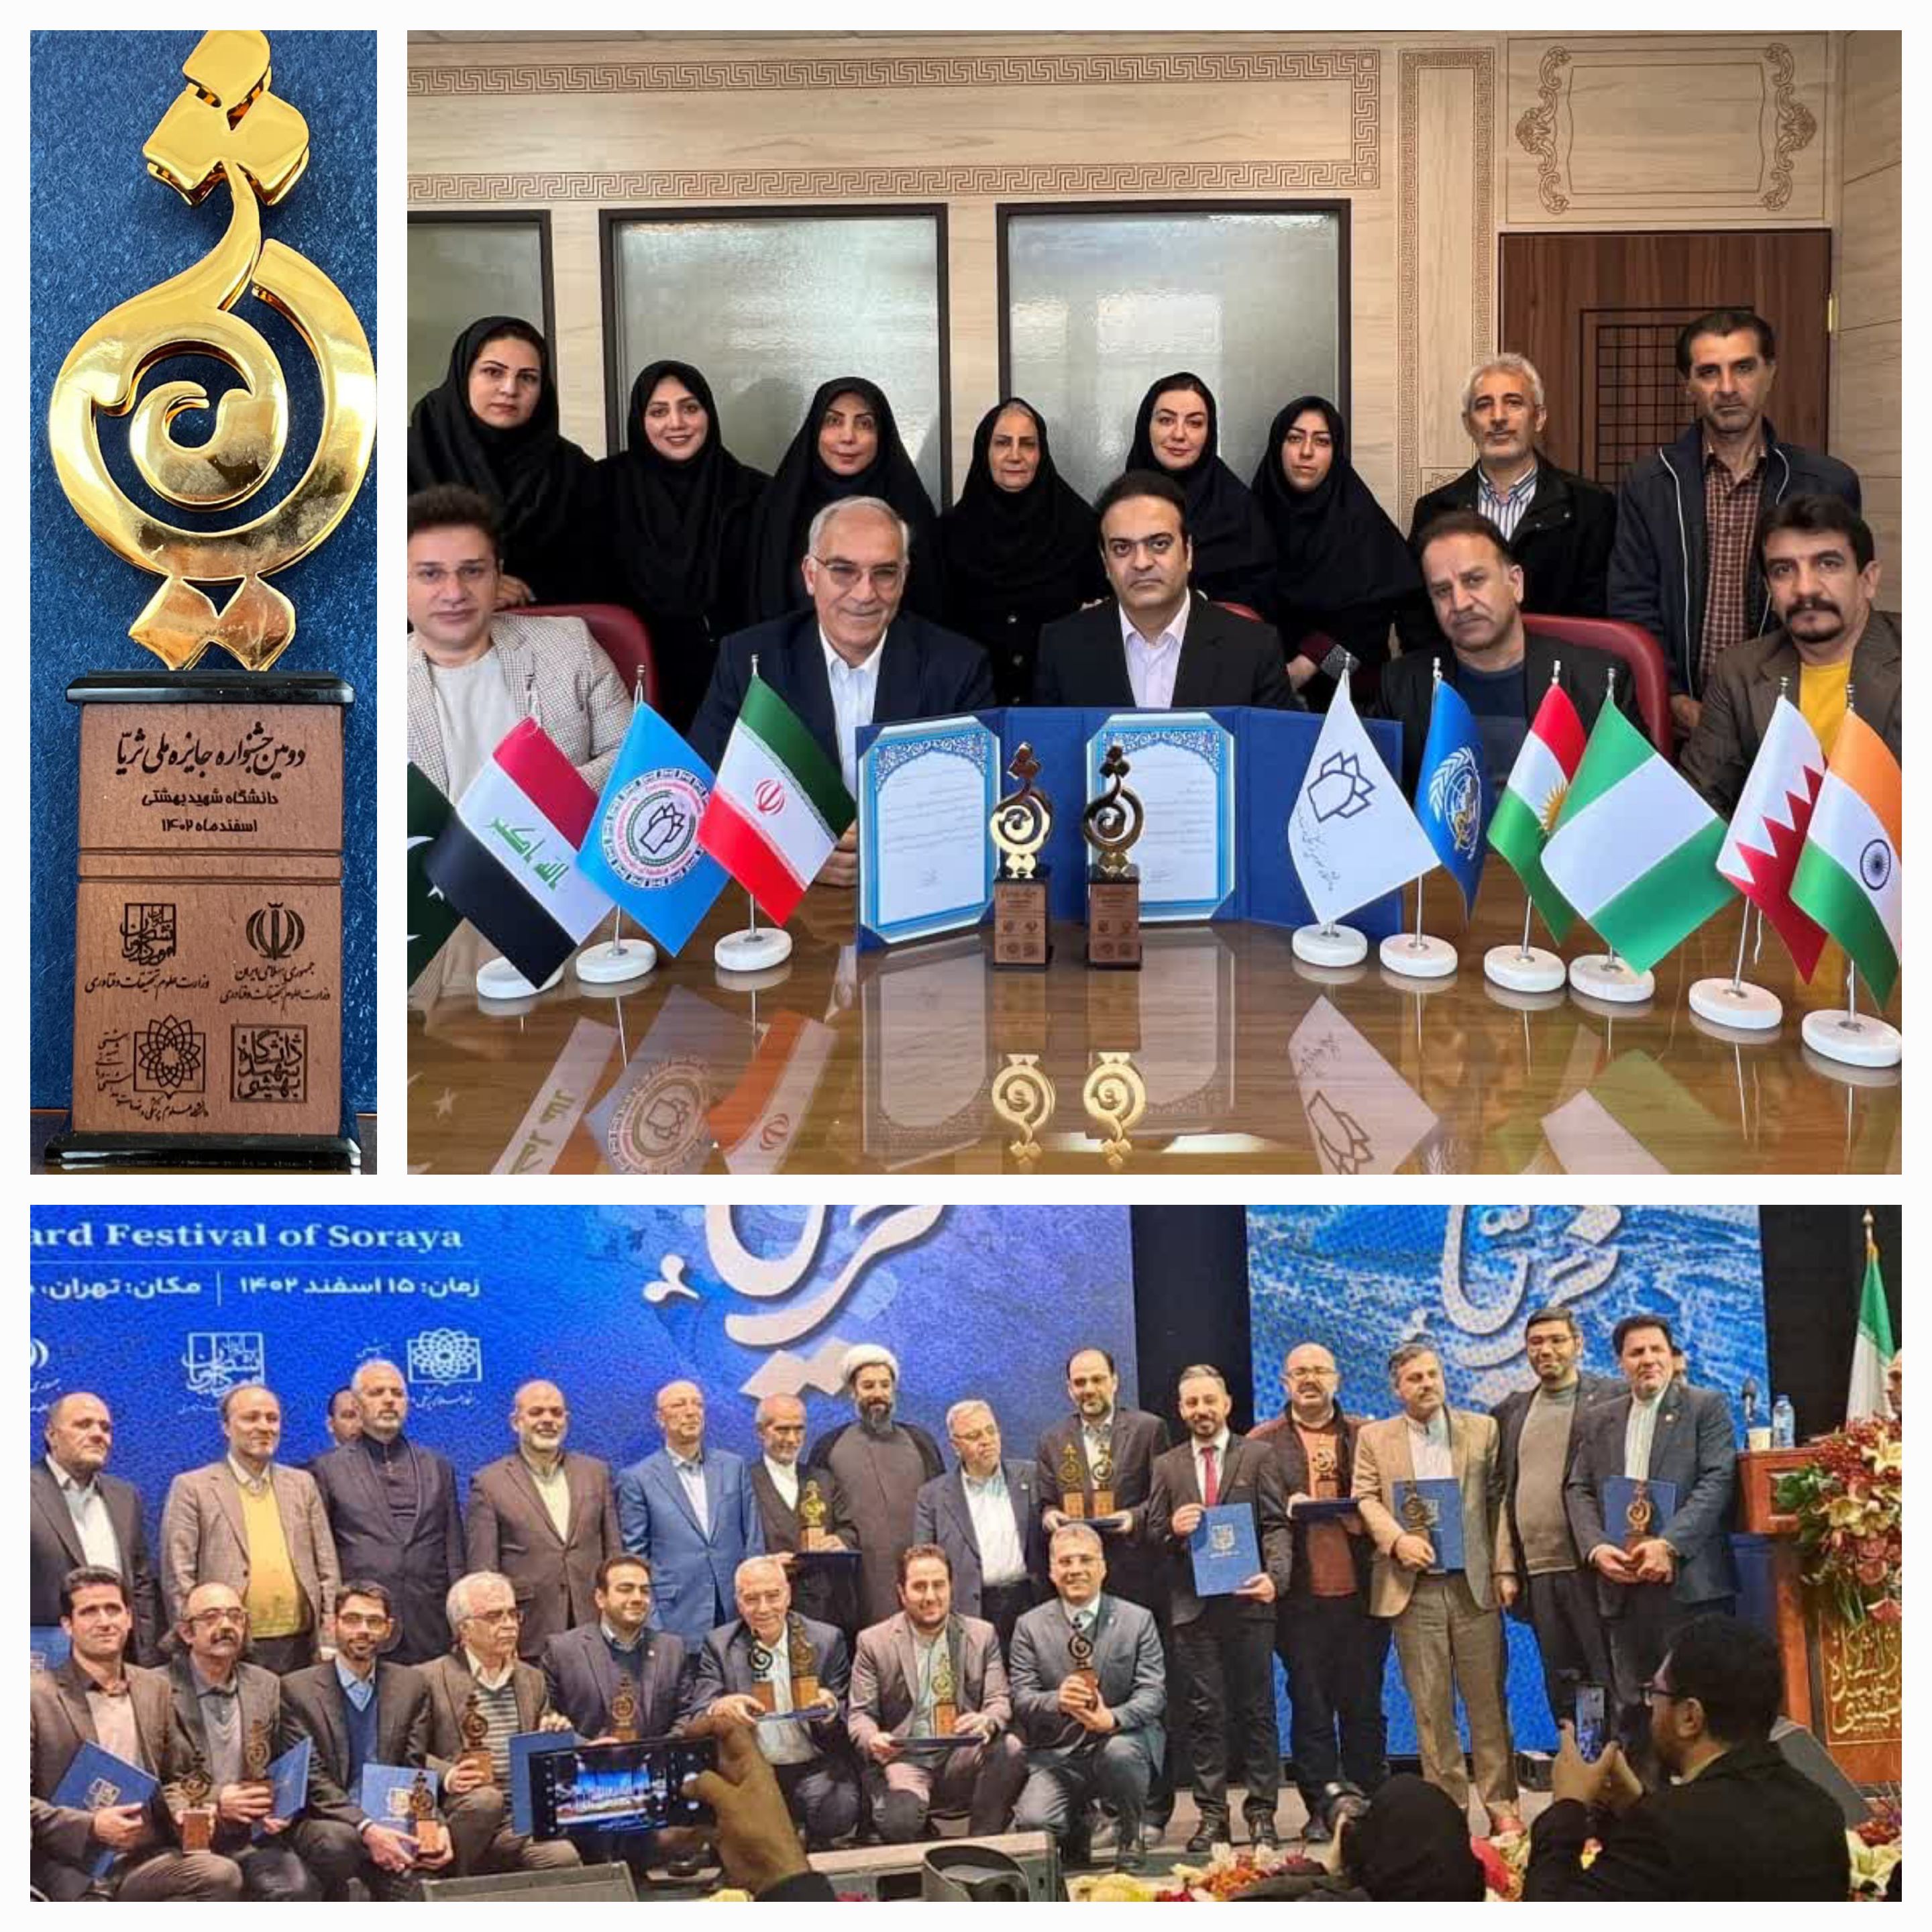 درخشش دانشگاه علوم پزشکی کرمانشاه در جشنواره ملی ثریا